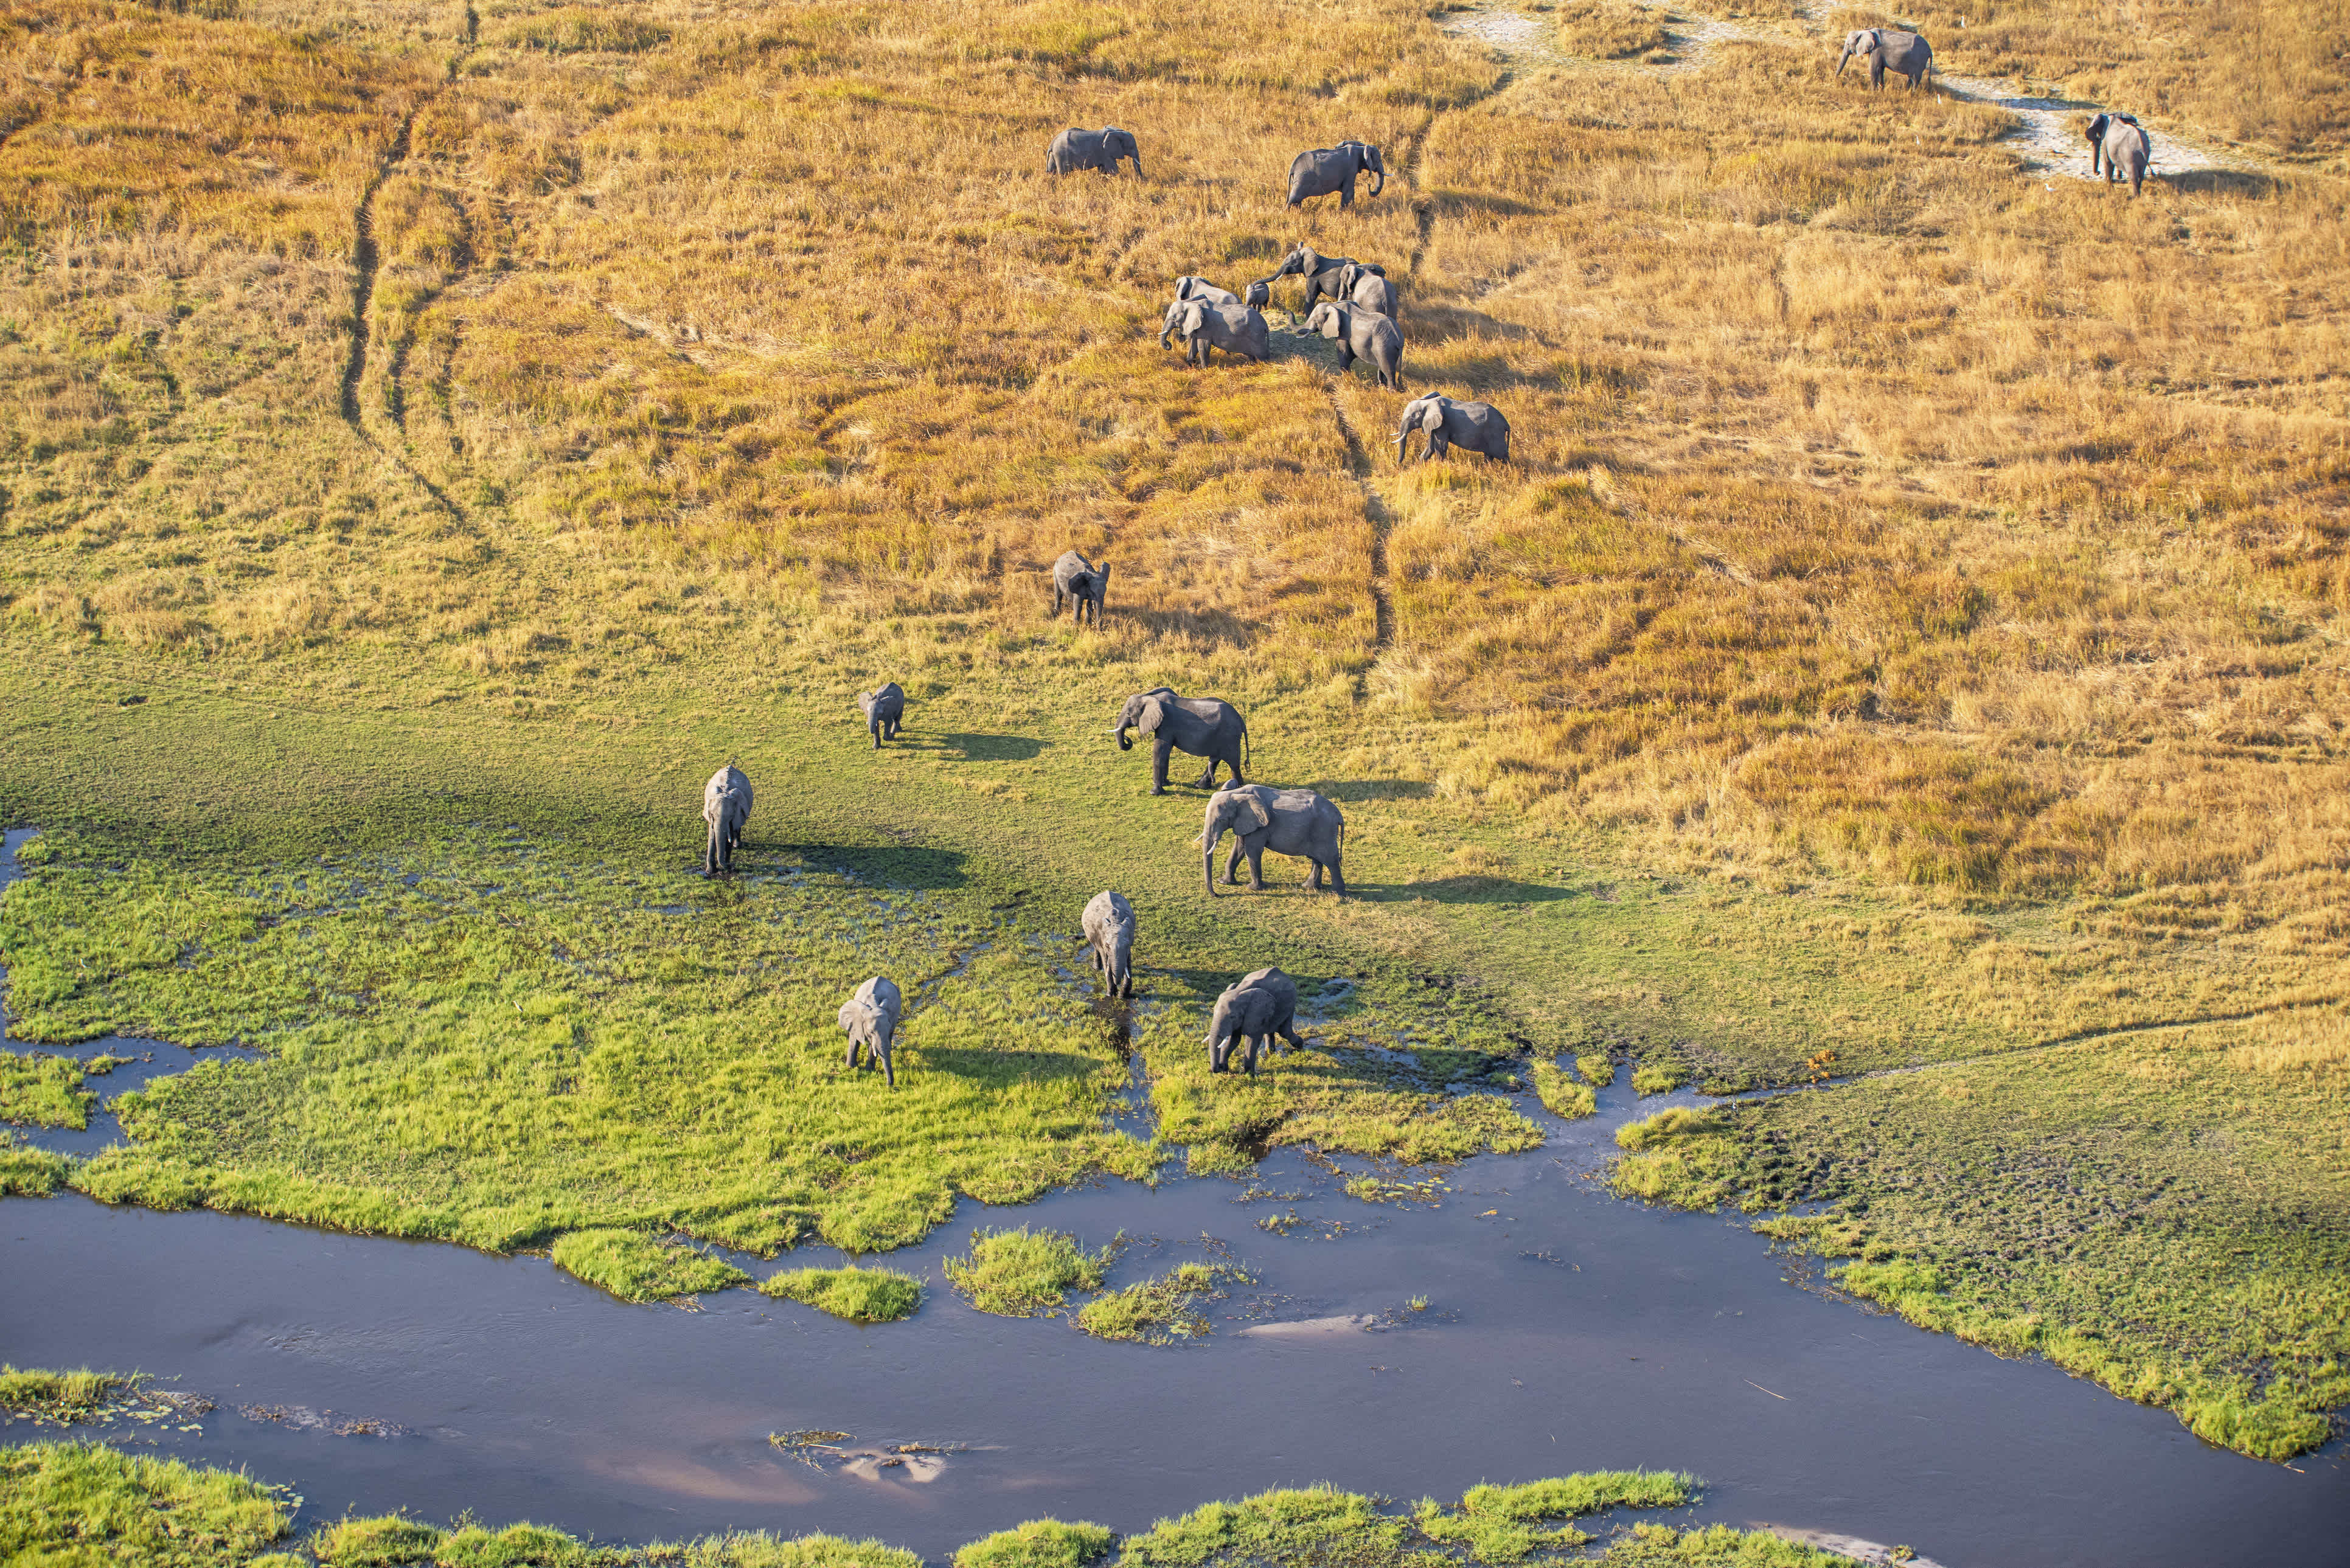 Luftaufnahme von Elefanten, Okavango Delta, Botswana, Afrika 